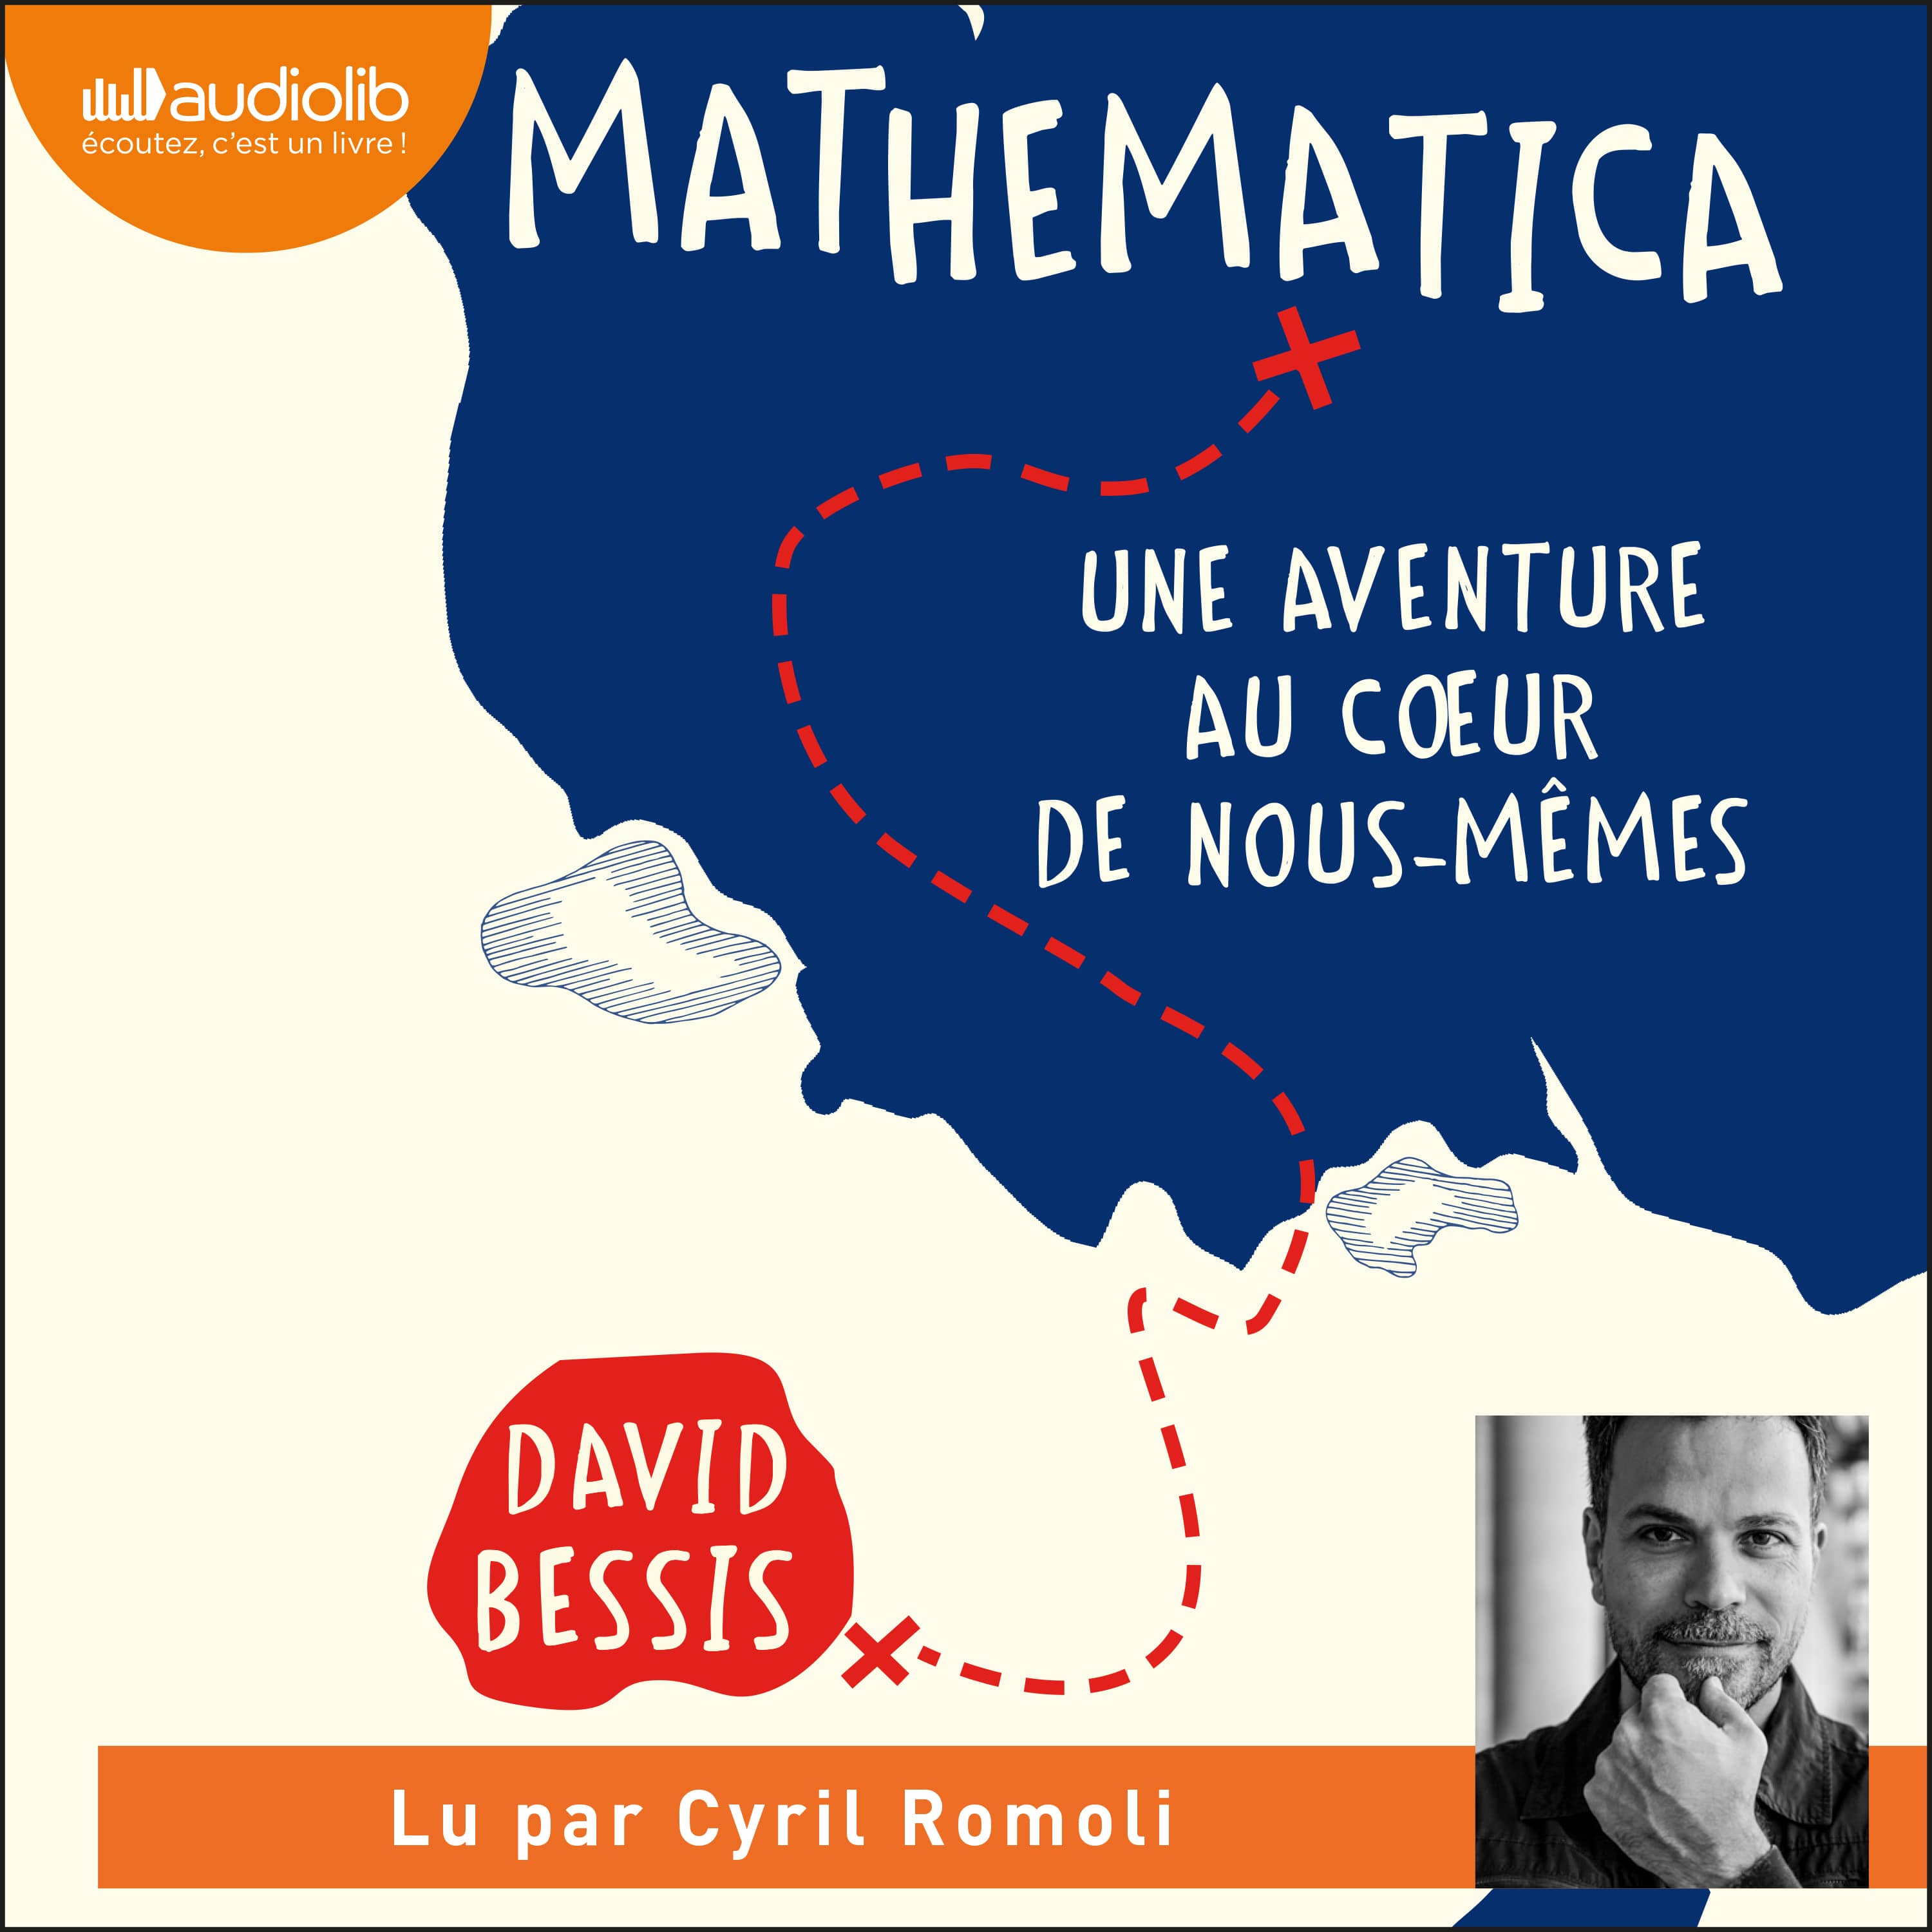 Couverture du livre audio Mathematica De David Bessis 